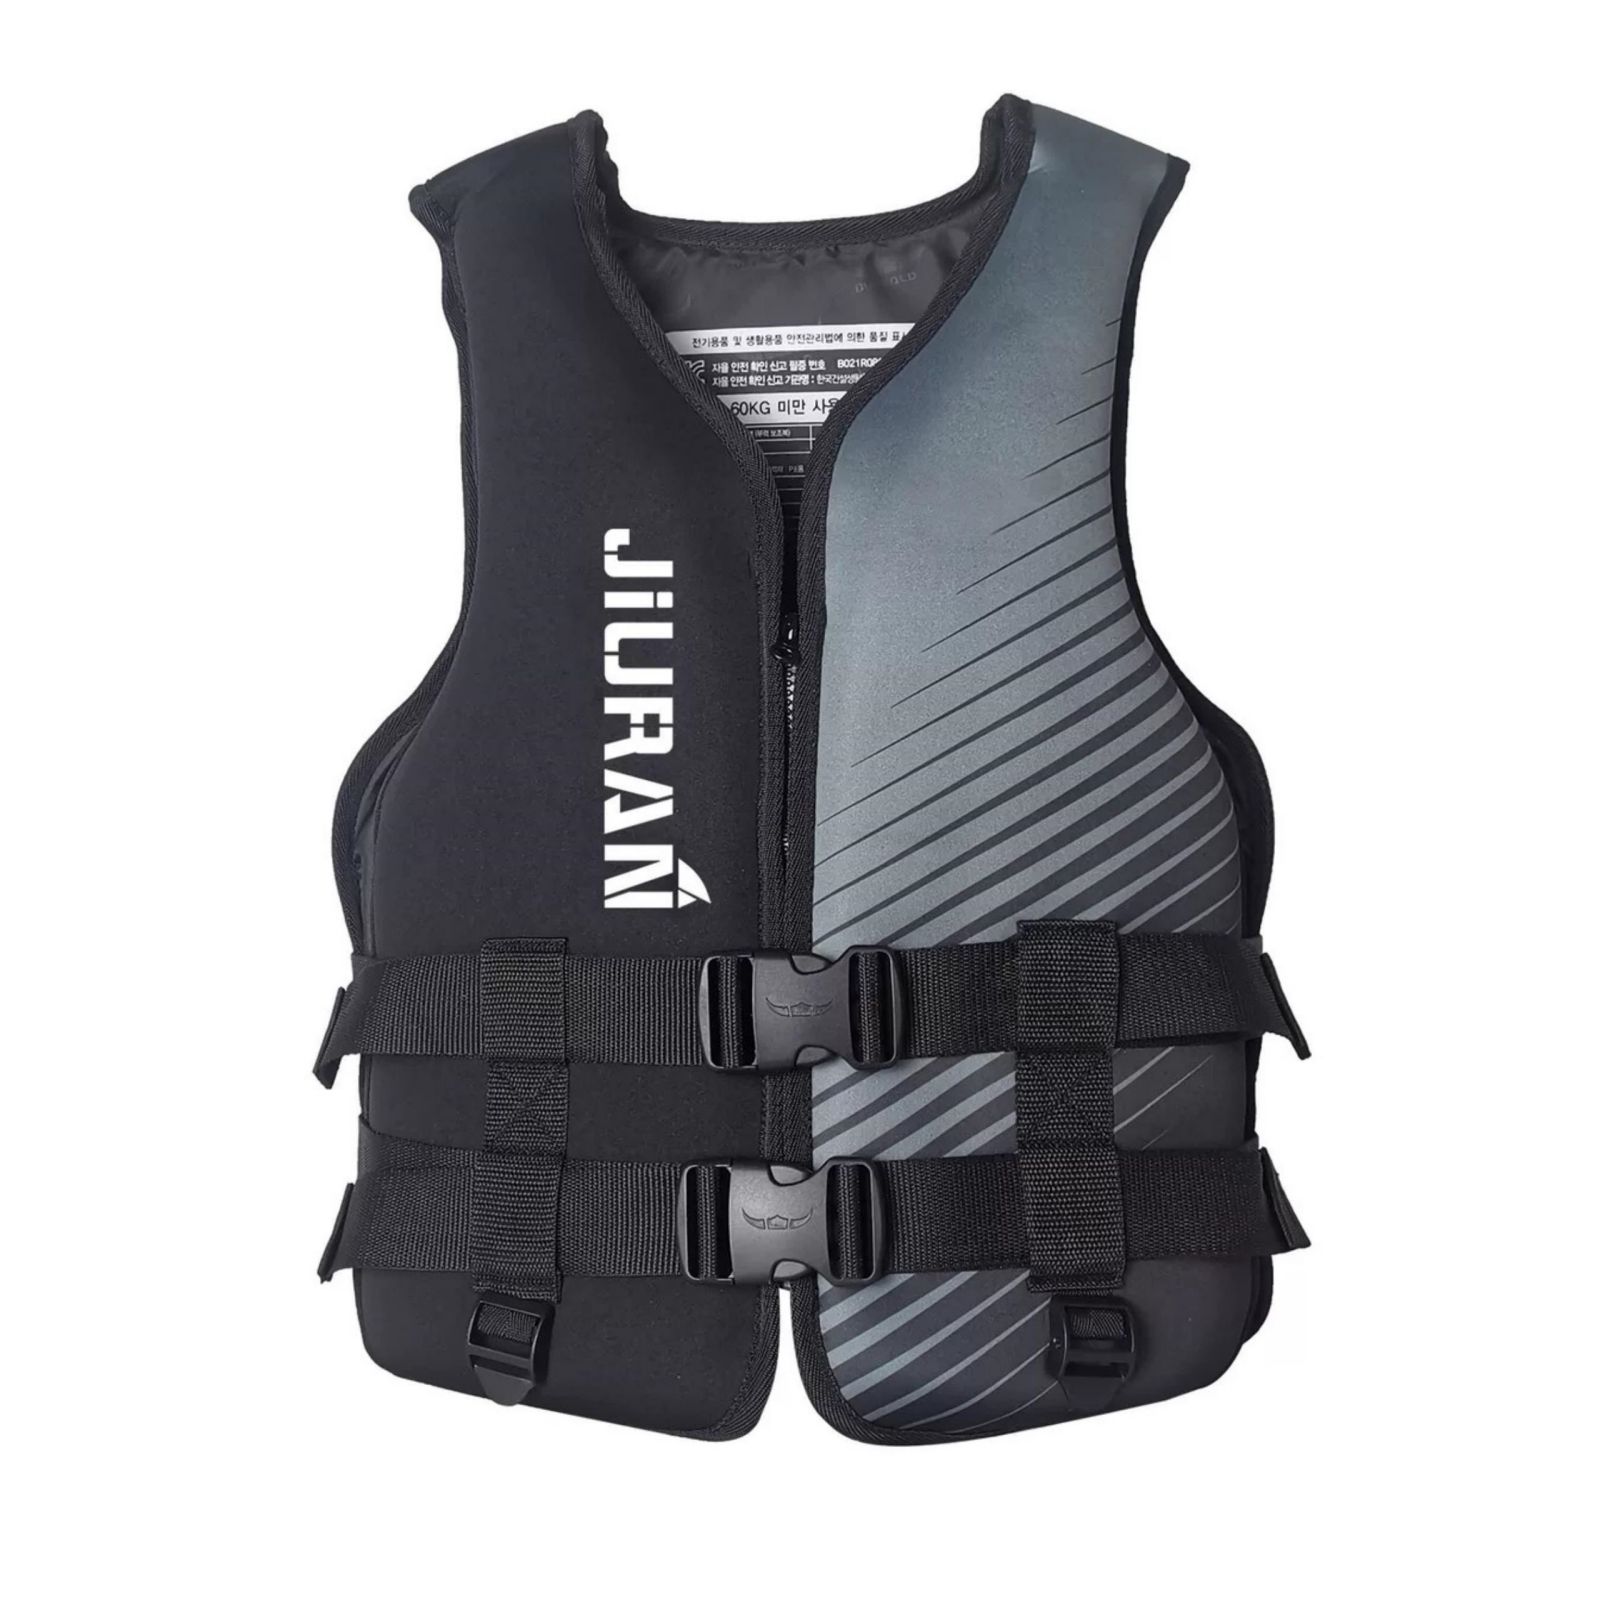 Life Jacket for Unisex Adjustable Safety Breathable Life Vest for Men Women – XL, Black